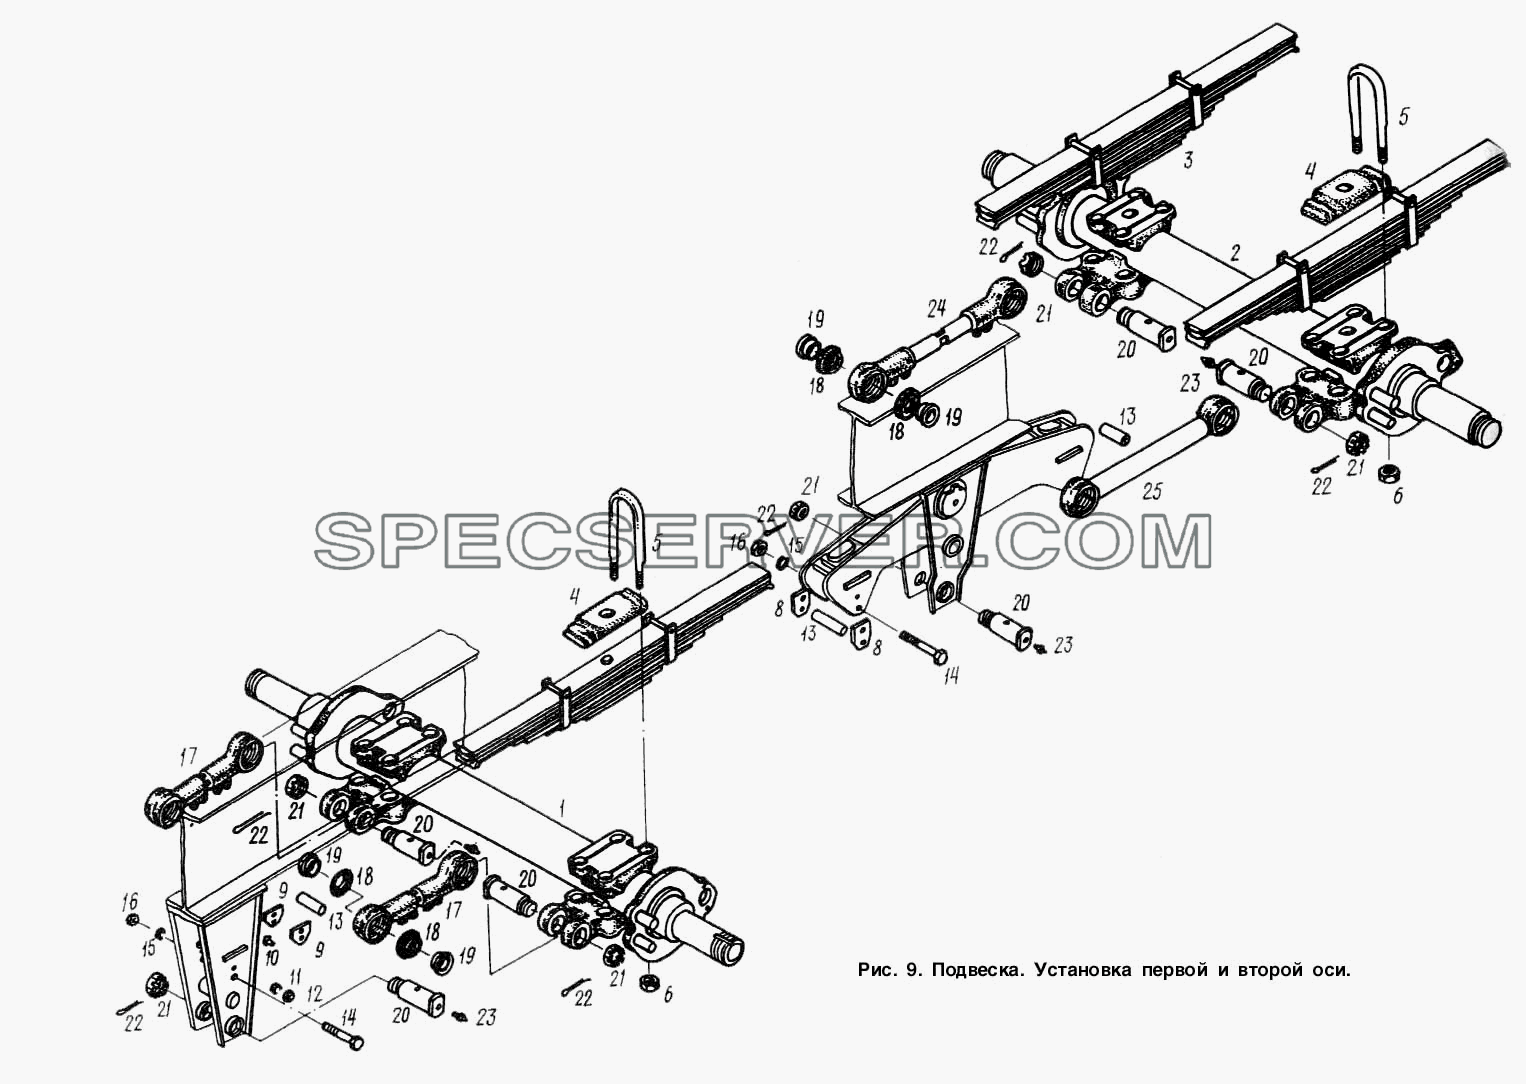 Подвеска. Установка первой и второй оси для МАЗ-9758-30 (список запасных частей)